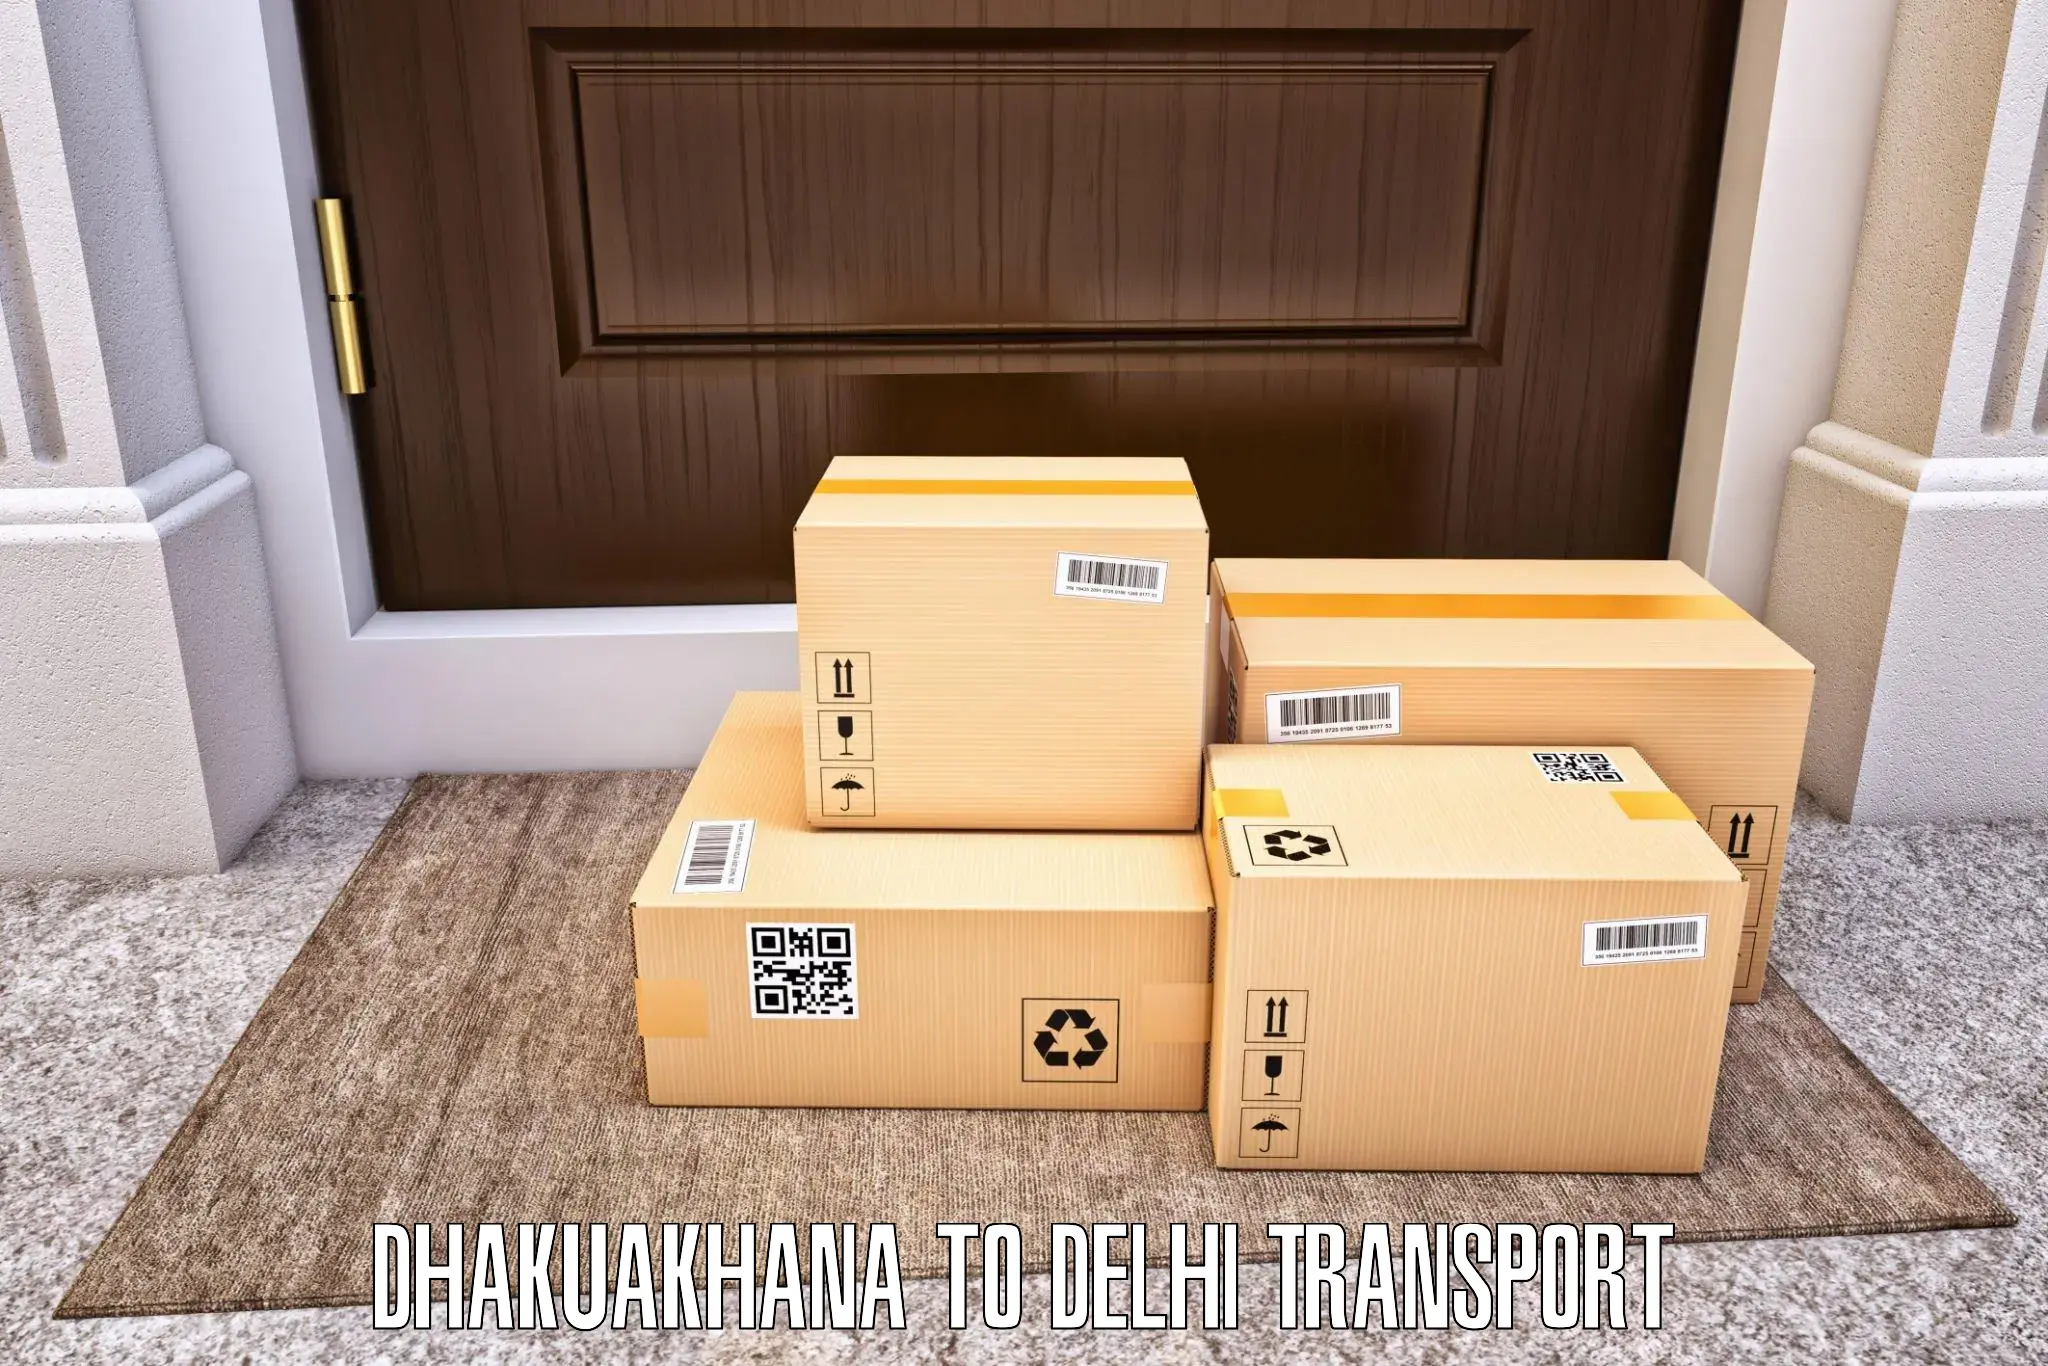 Cargo transport services Dhakuakhana to Jamia Millia Islamia New Delhi